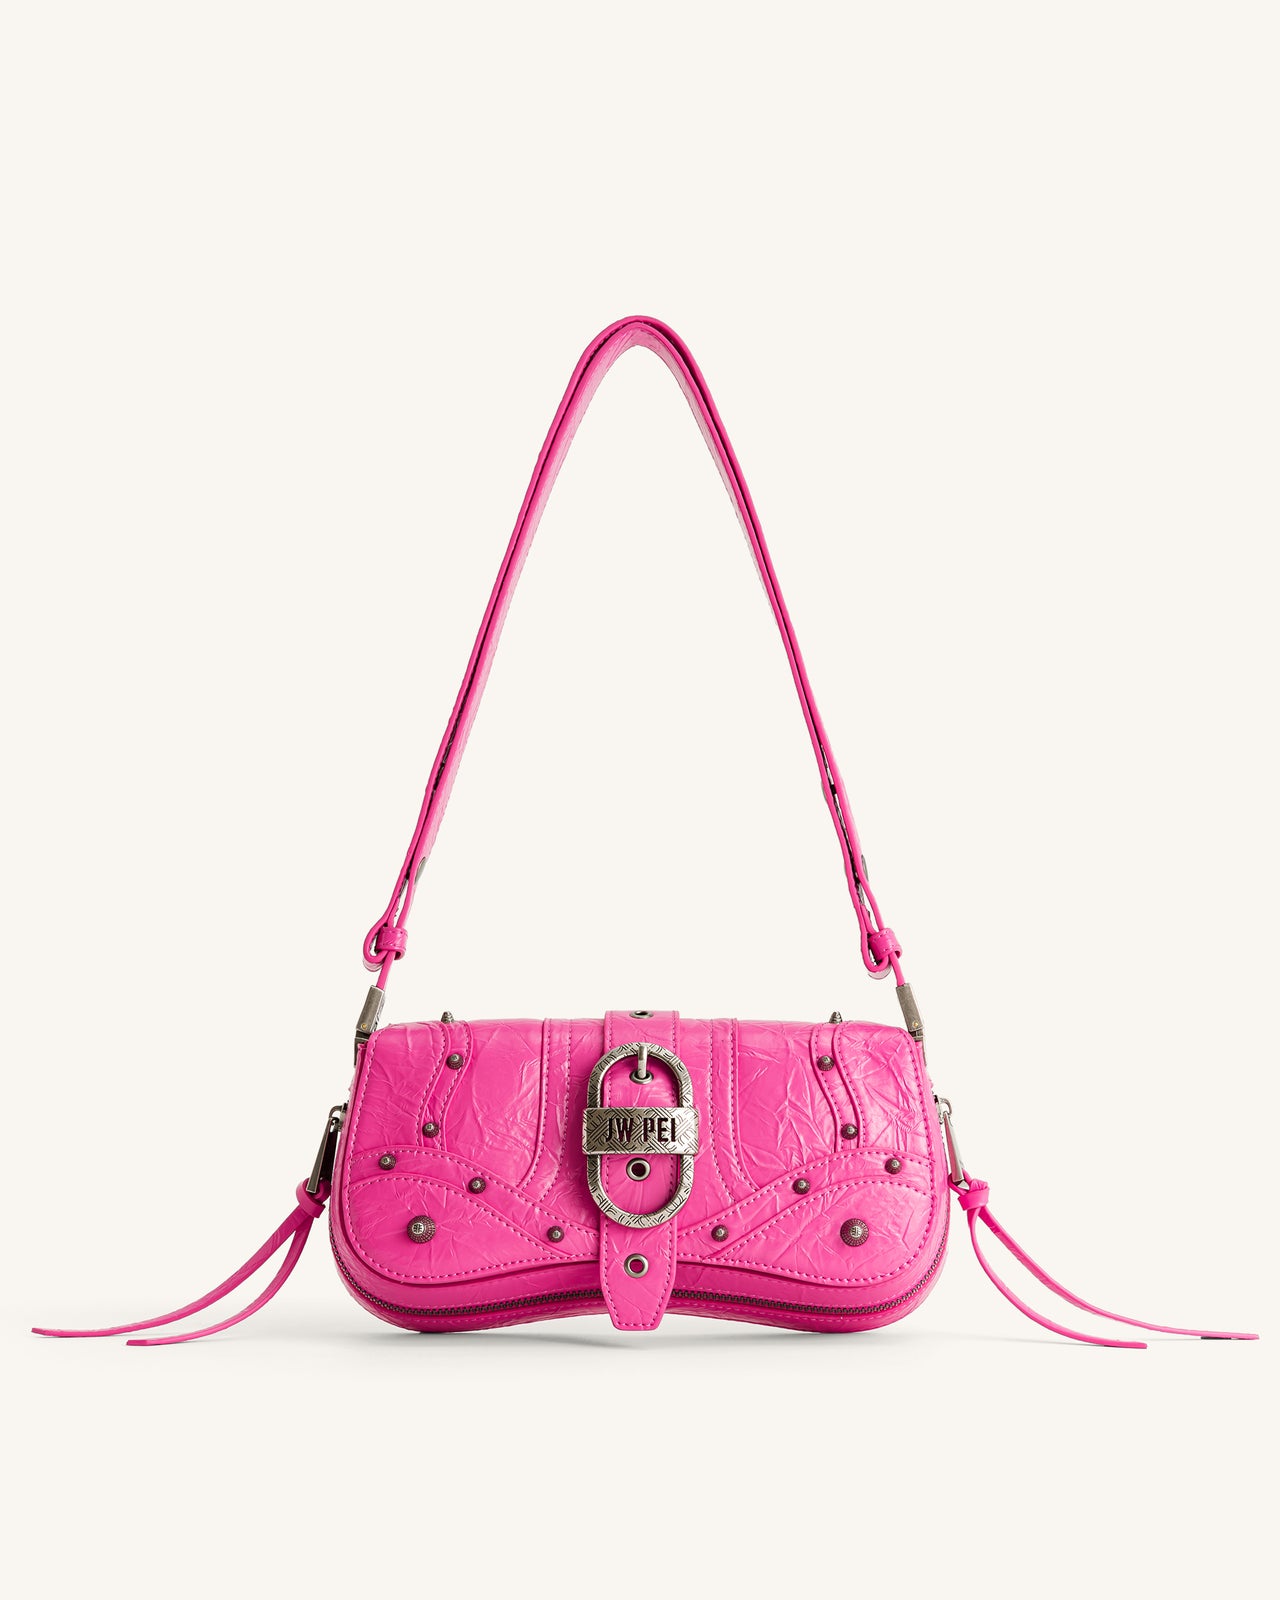 Jw PEI bag pink  Moda de ropa, Ropa de moda, Moda